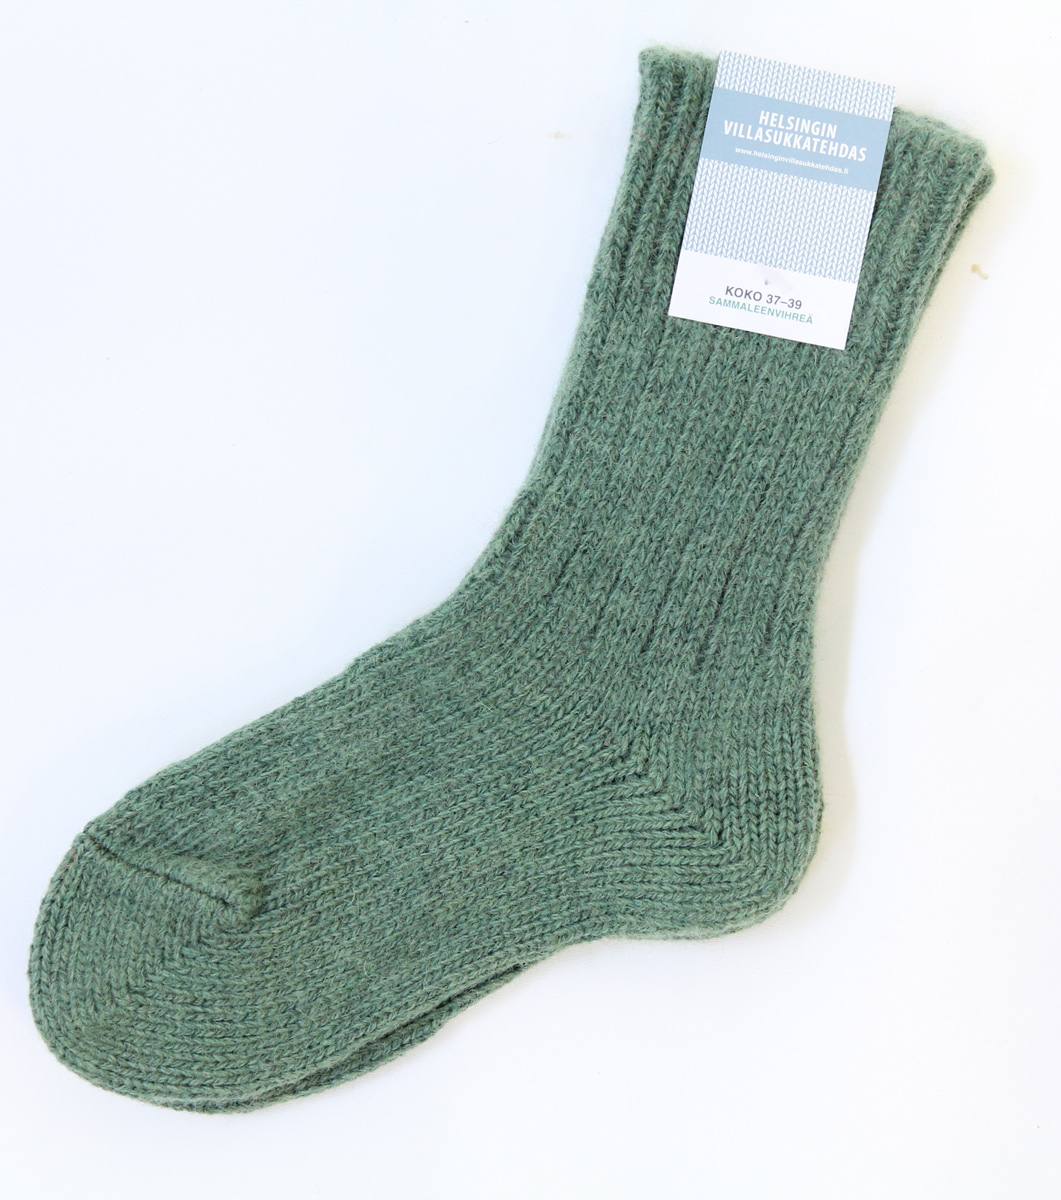 Helsingin Villasukkatehdas Wool socks Dark green 43-45